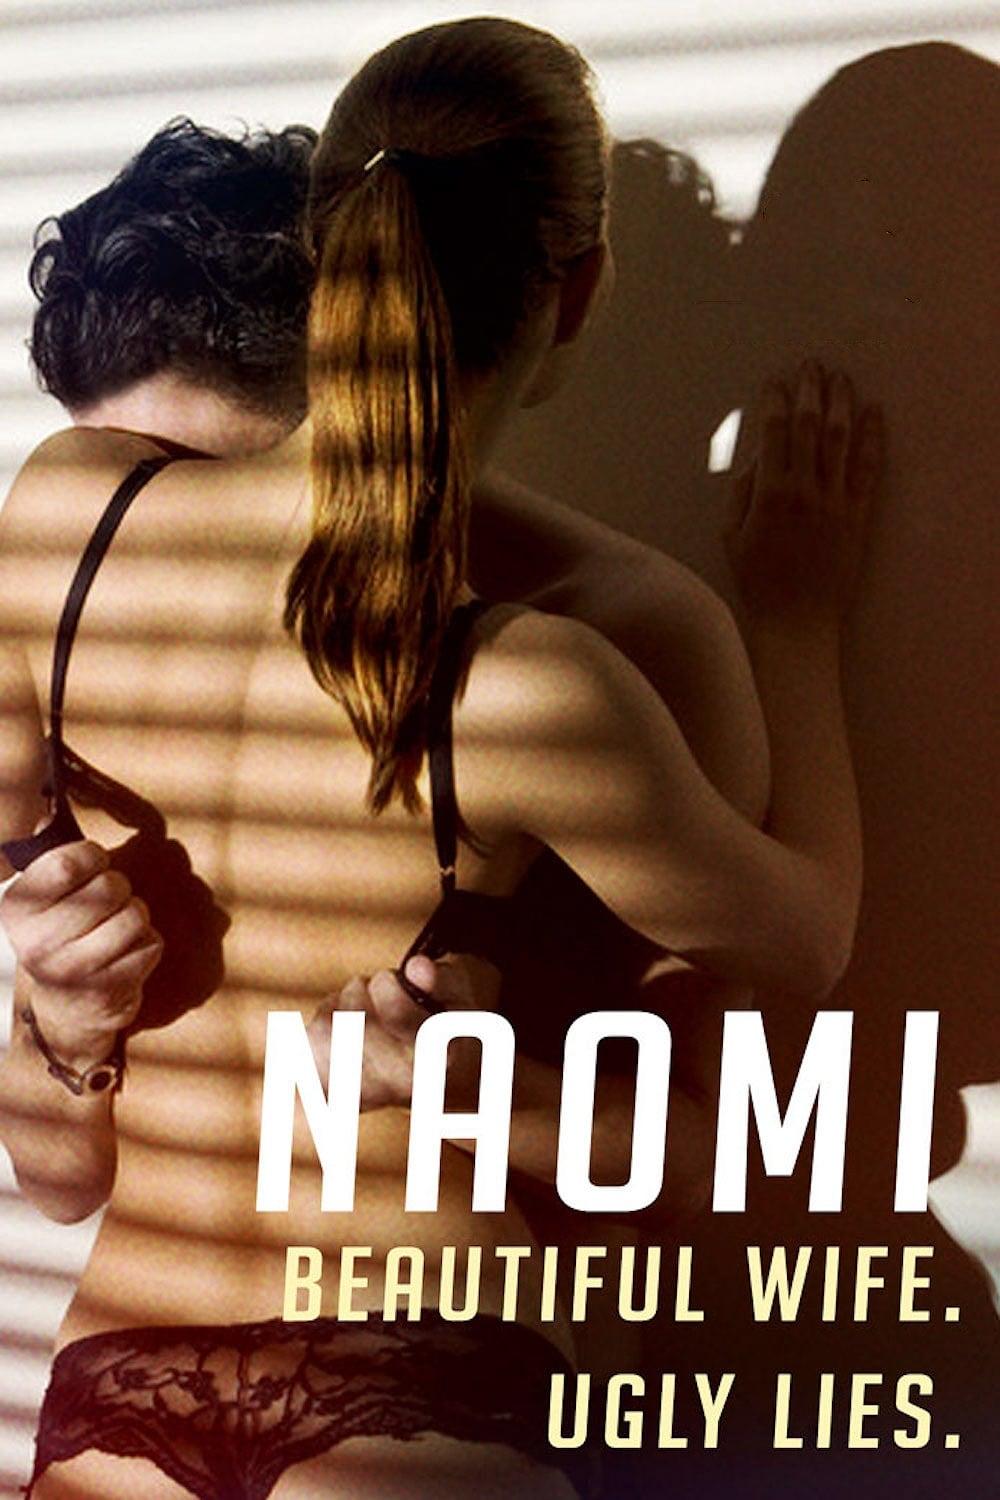 Naomi poster